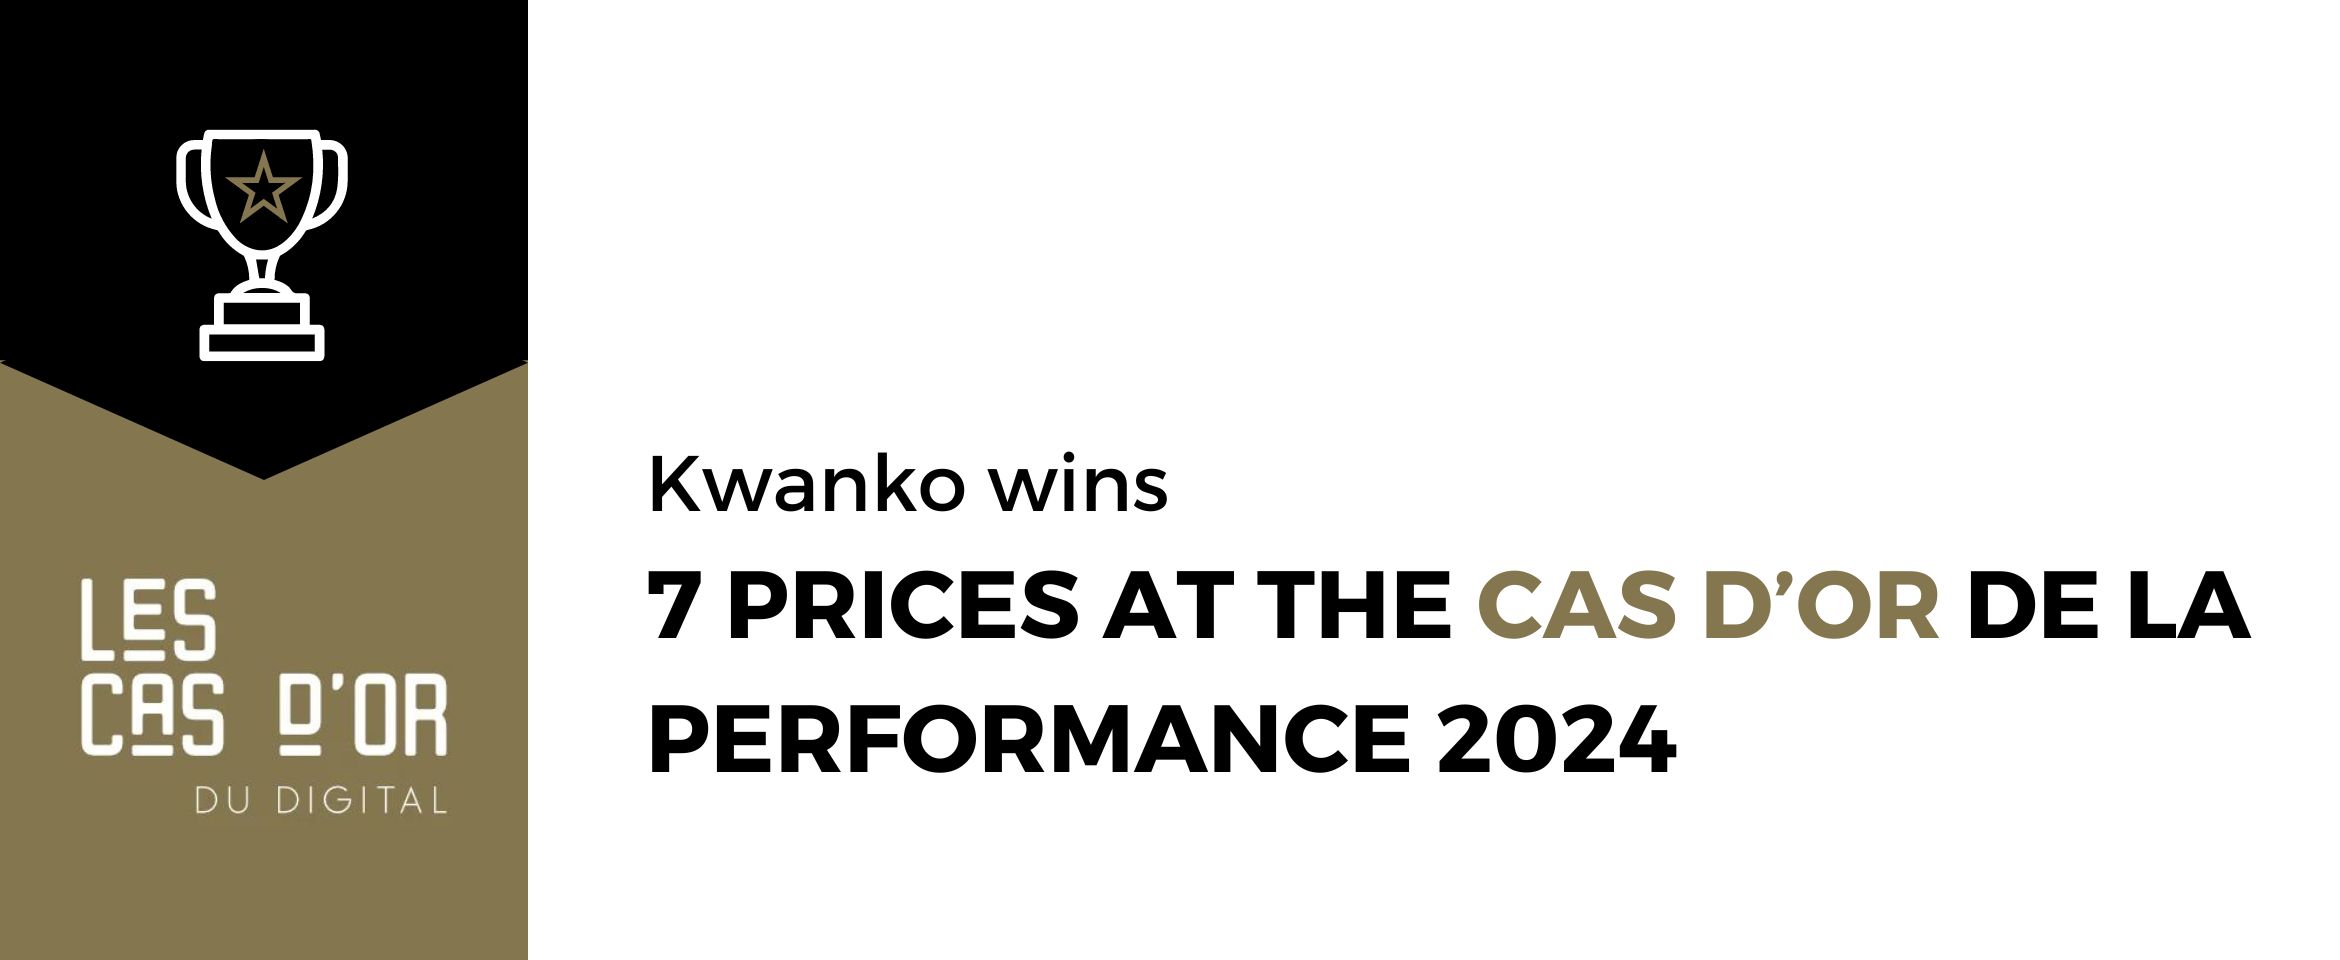 Kwanko wins 7 cas d&#8217;Or de la performance at the 2024 edition